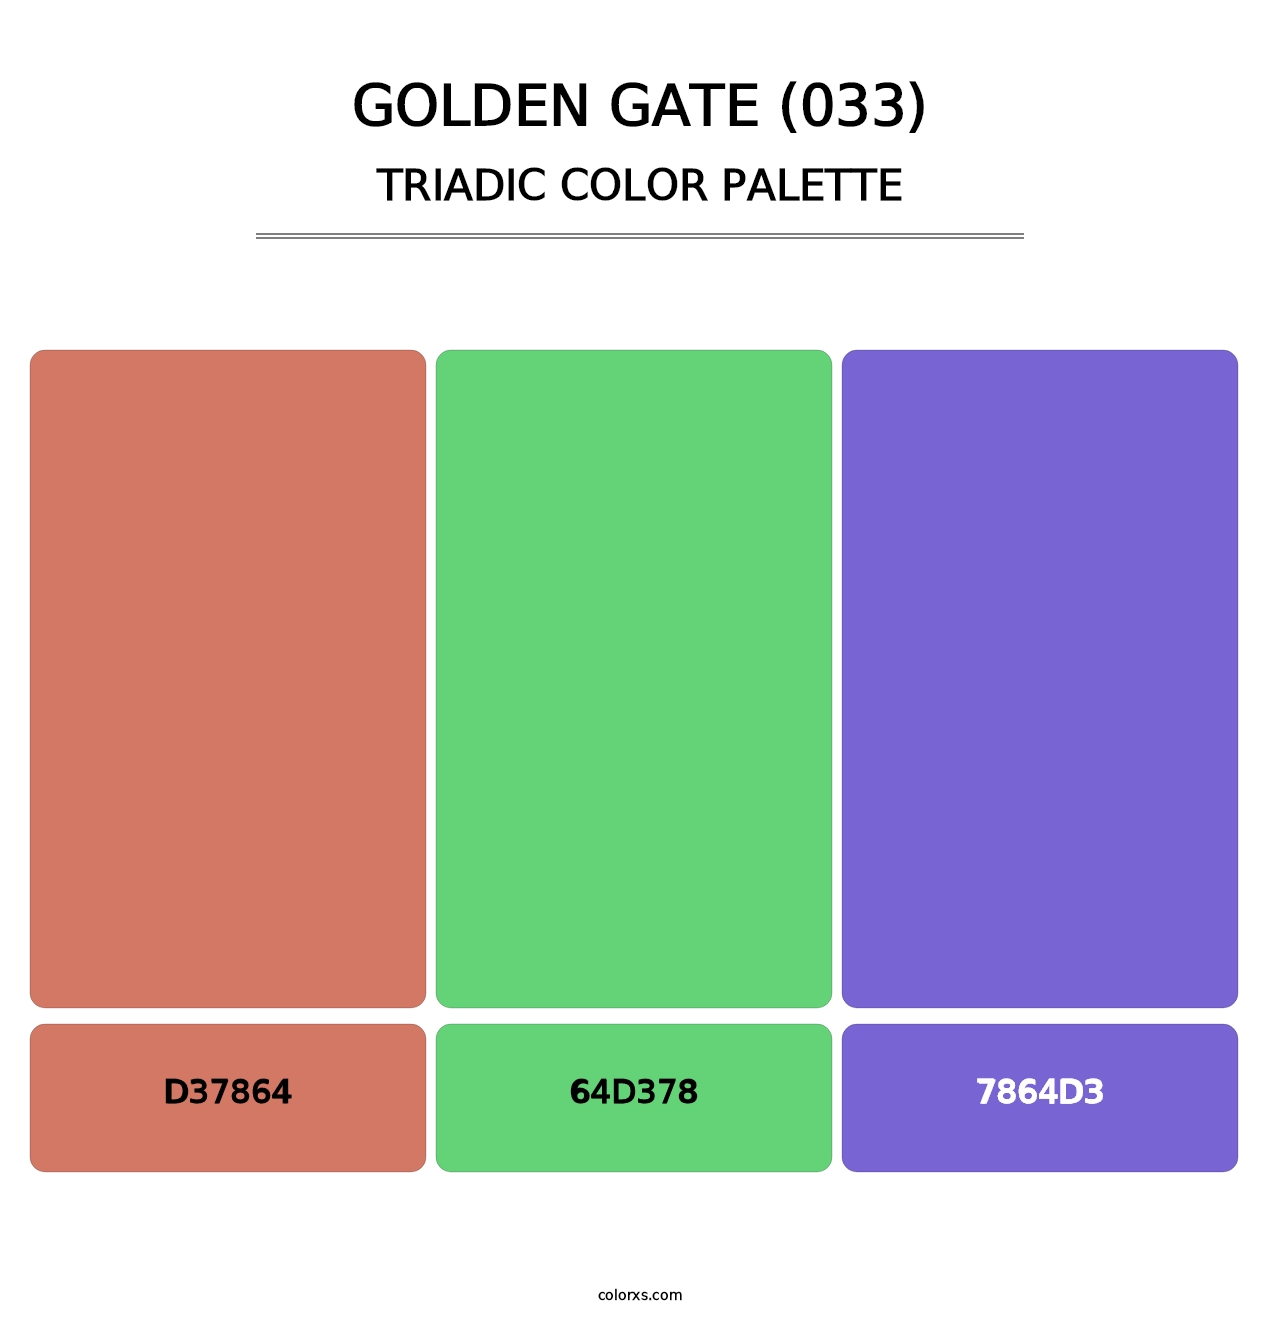 Golden Gate (033) - Triadic Color Palette